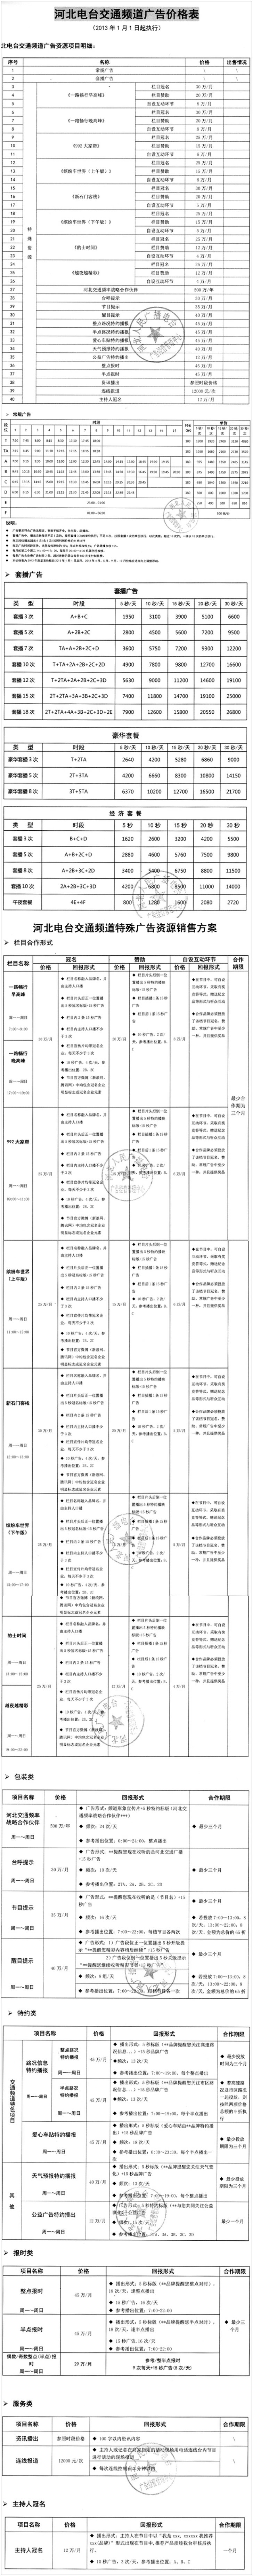 2013河北人民广播电台交通广播FM99.2广告报价表.jpg